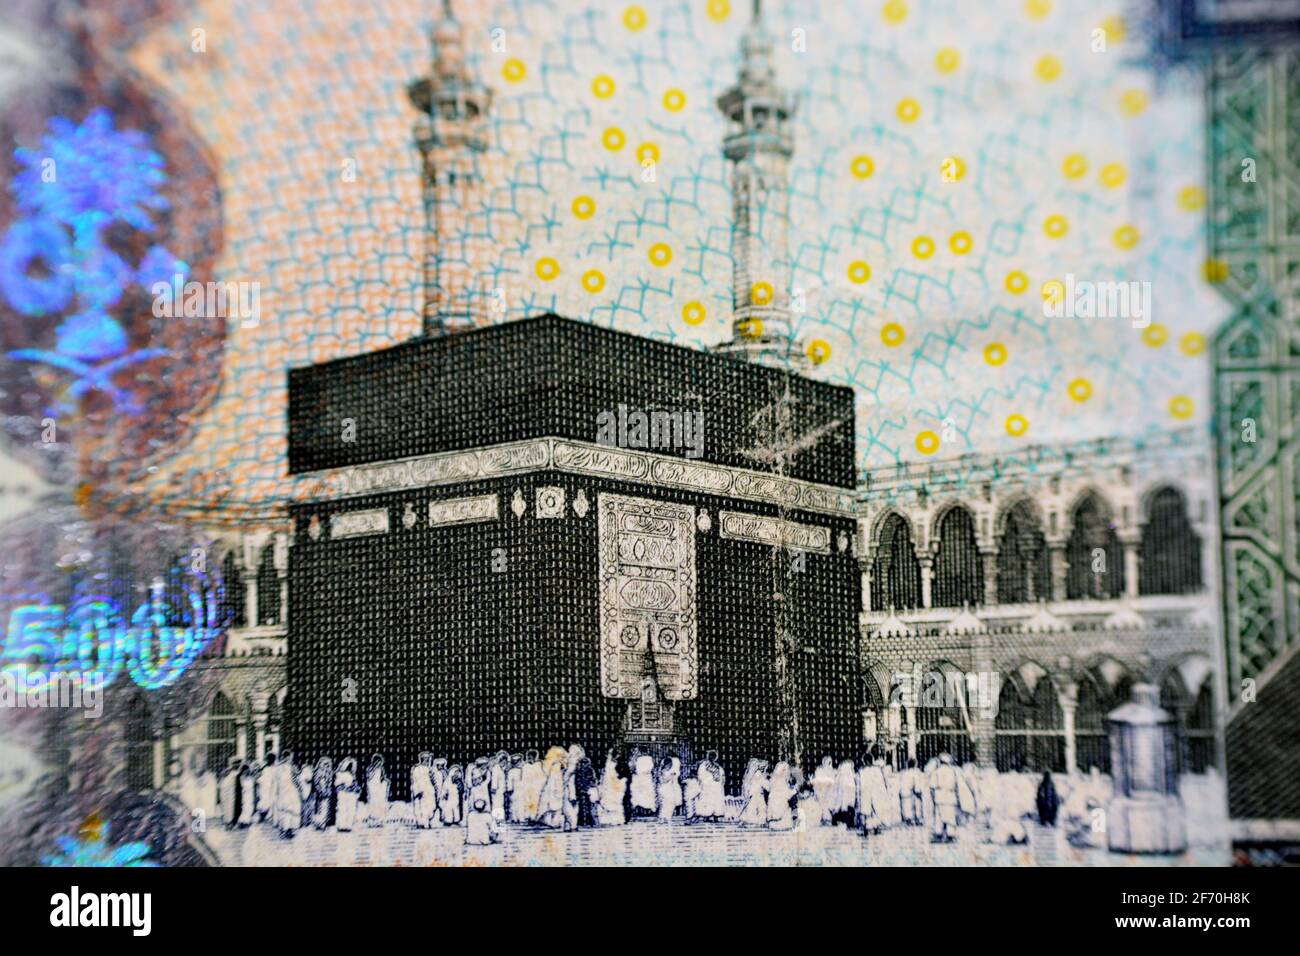 Kaaba et Al-masjid Al-haram à la Mecque photo du côté de l'observation de 500 billets de banque de riyals saoudiens, gros plan avec une attention sélective de 500 fonds de riyals saoudiens Banque D'Images